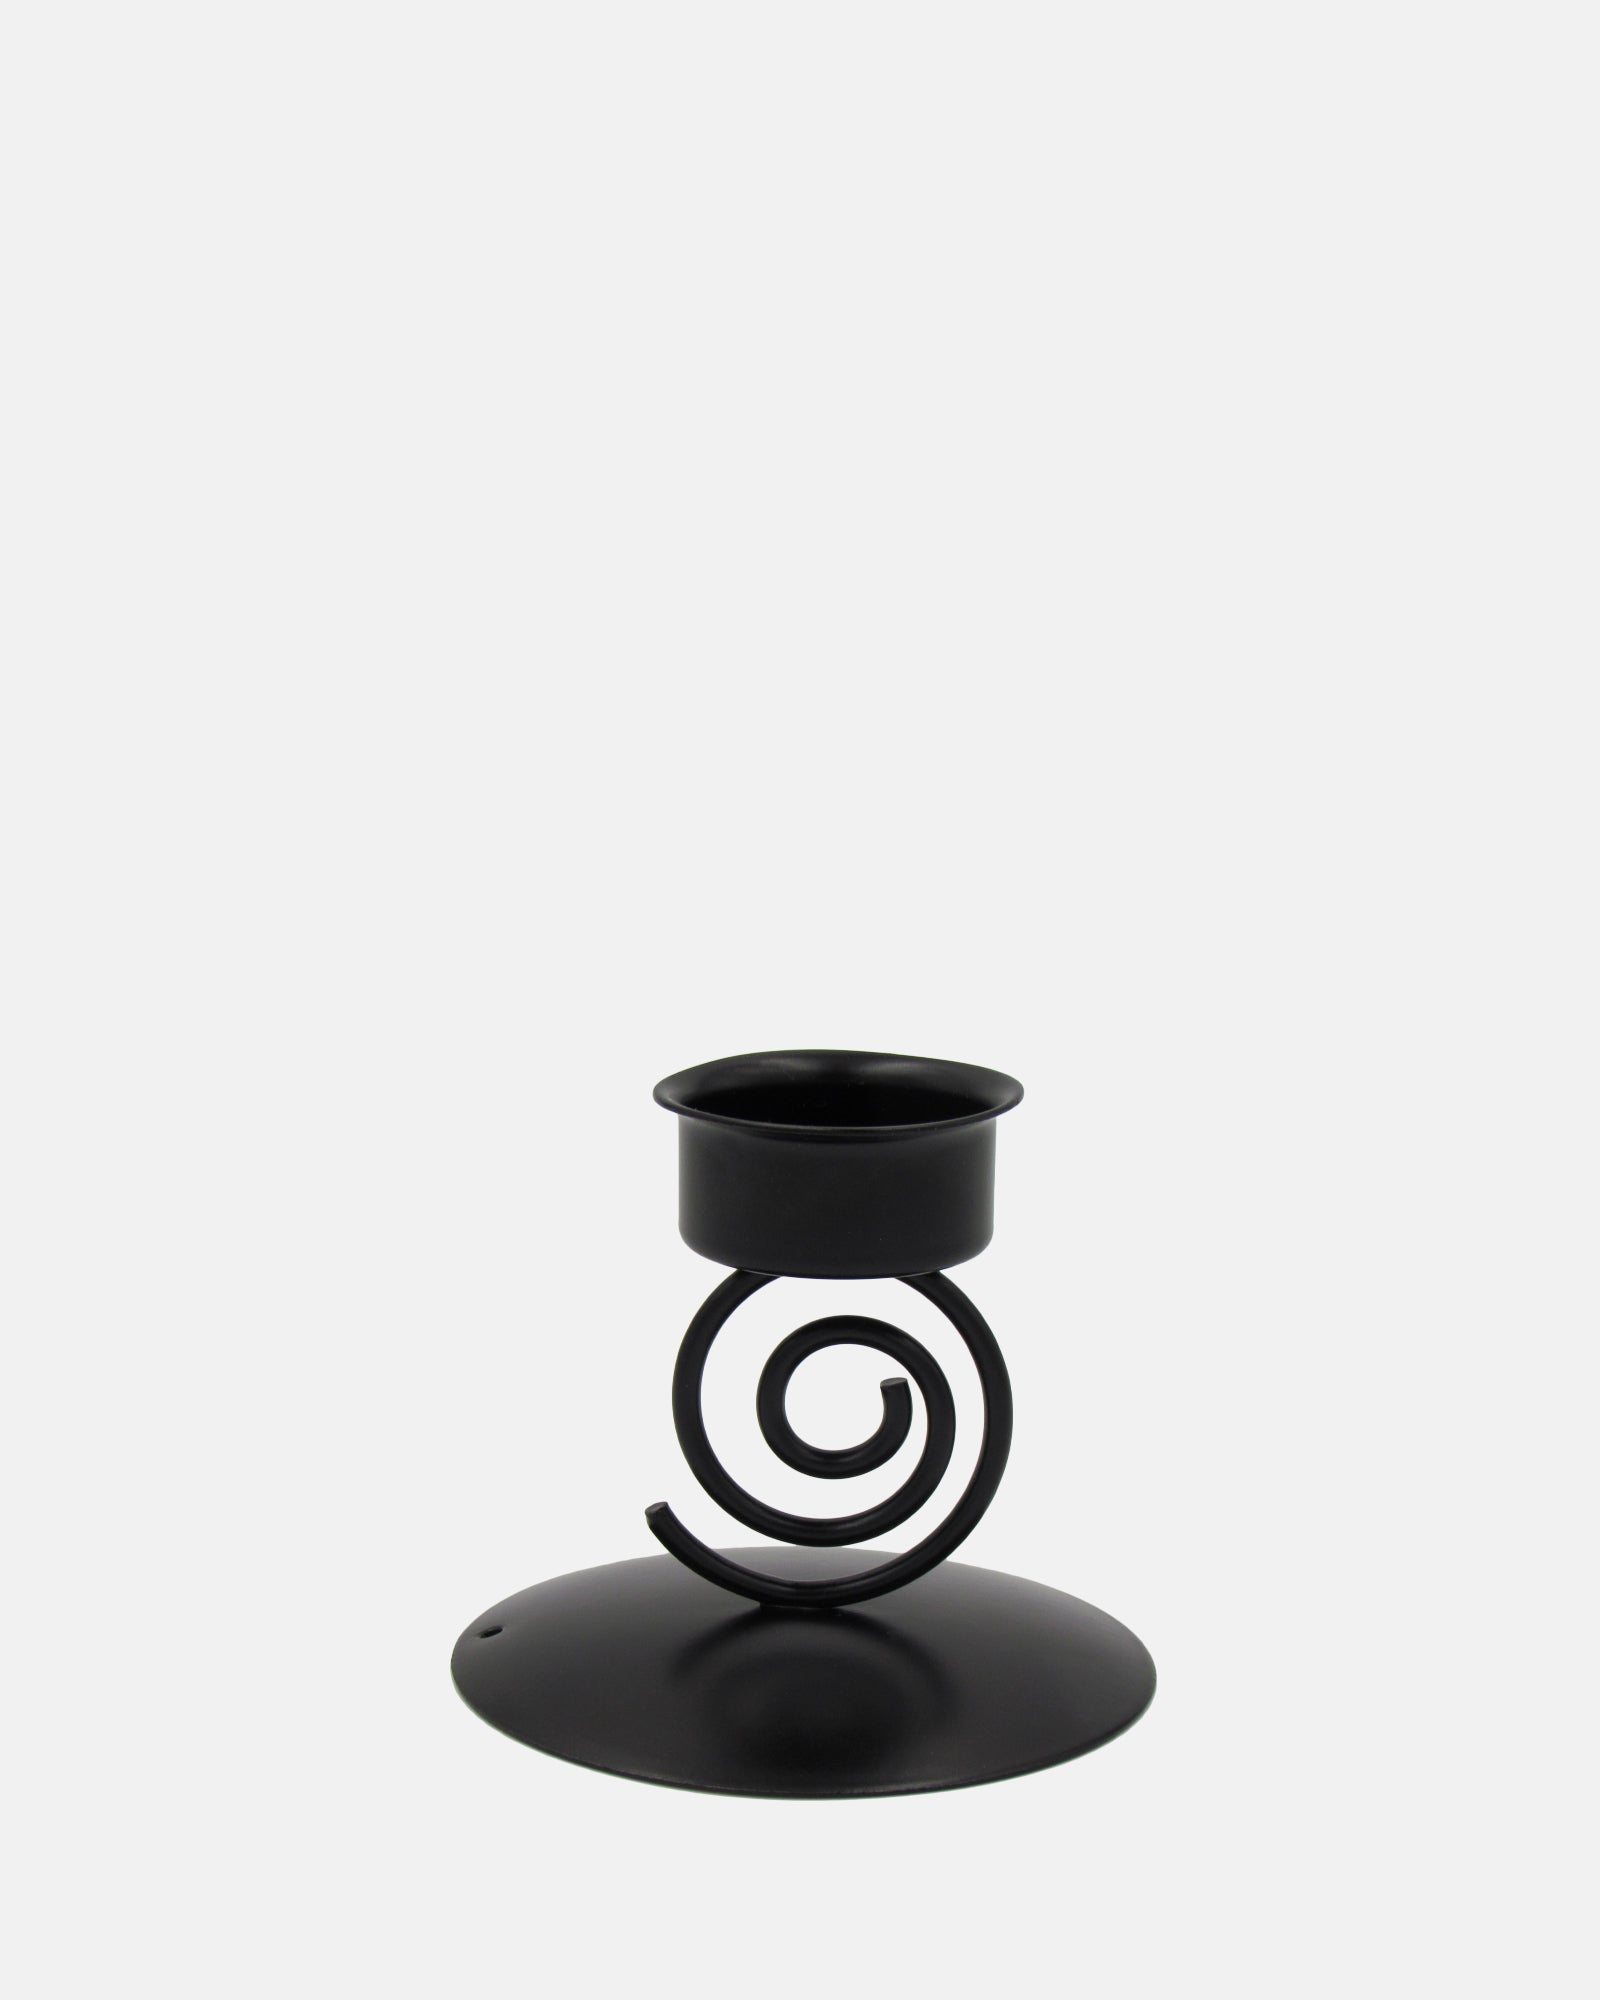 Spiral tealight/candle holder - BRIT LOCKER